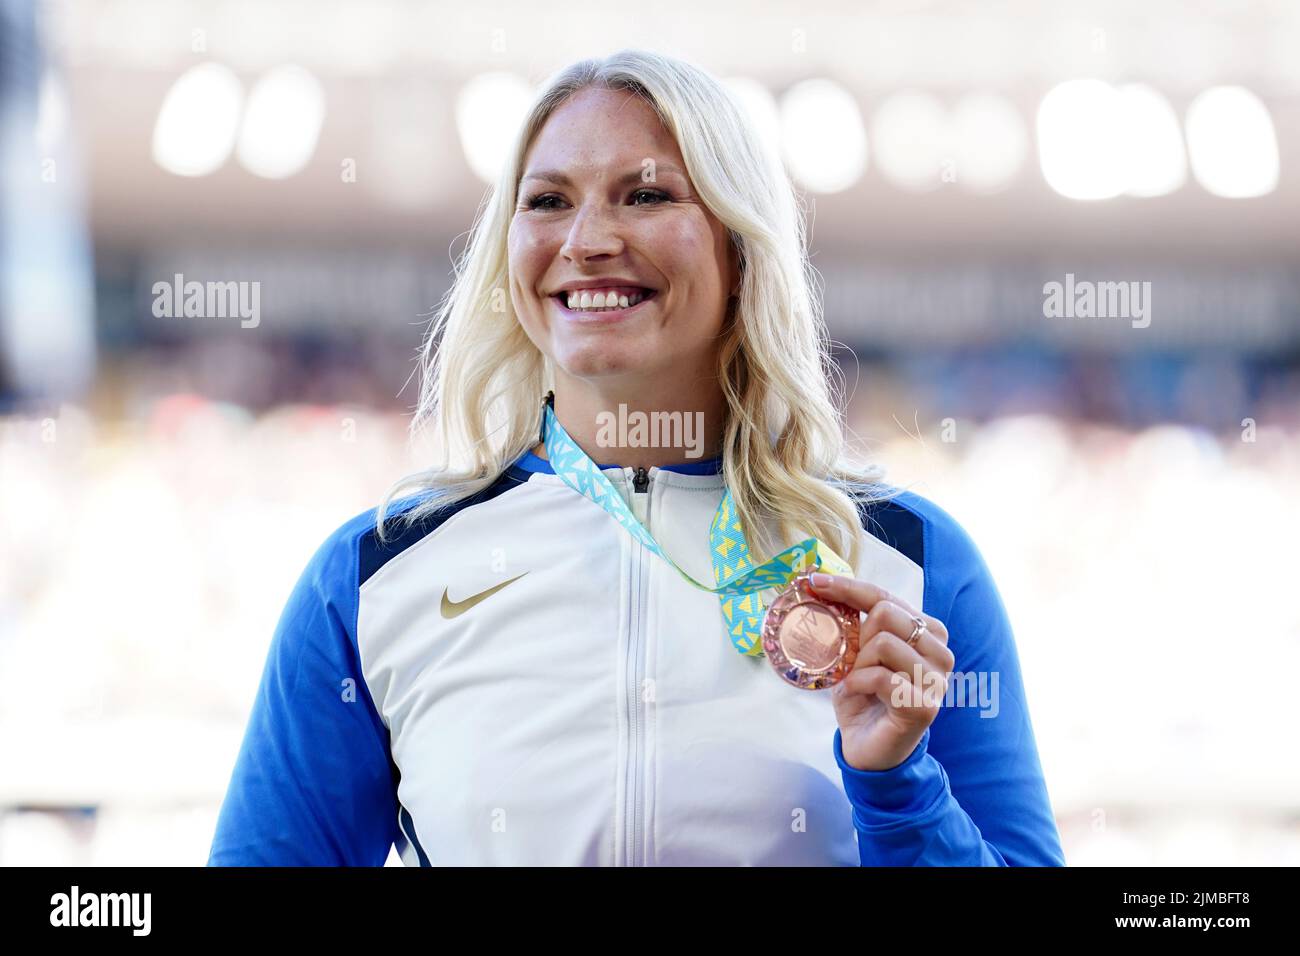 Samantha Kinghorn in Scozia con la sua medaglia di bronzo dopo la finale delle Donne del 53/54 1500m all’Alexander Stadium l’otto giorno dei Giochi del Commonwealth del 2022 a Birmingham. Data foto: Venerdì 5 agosto 2022. Foto Stock